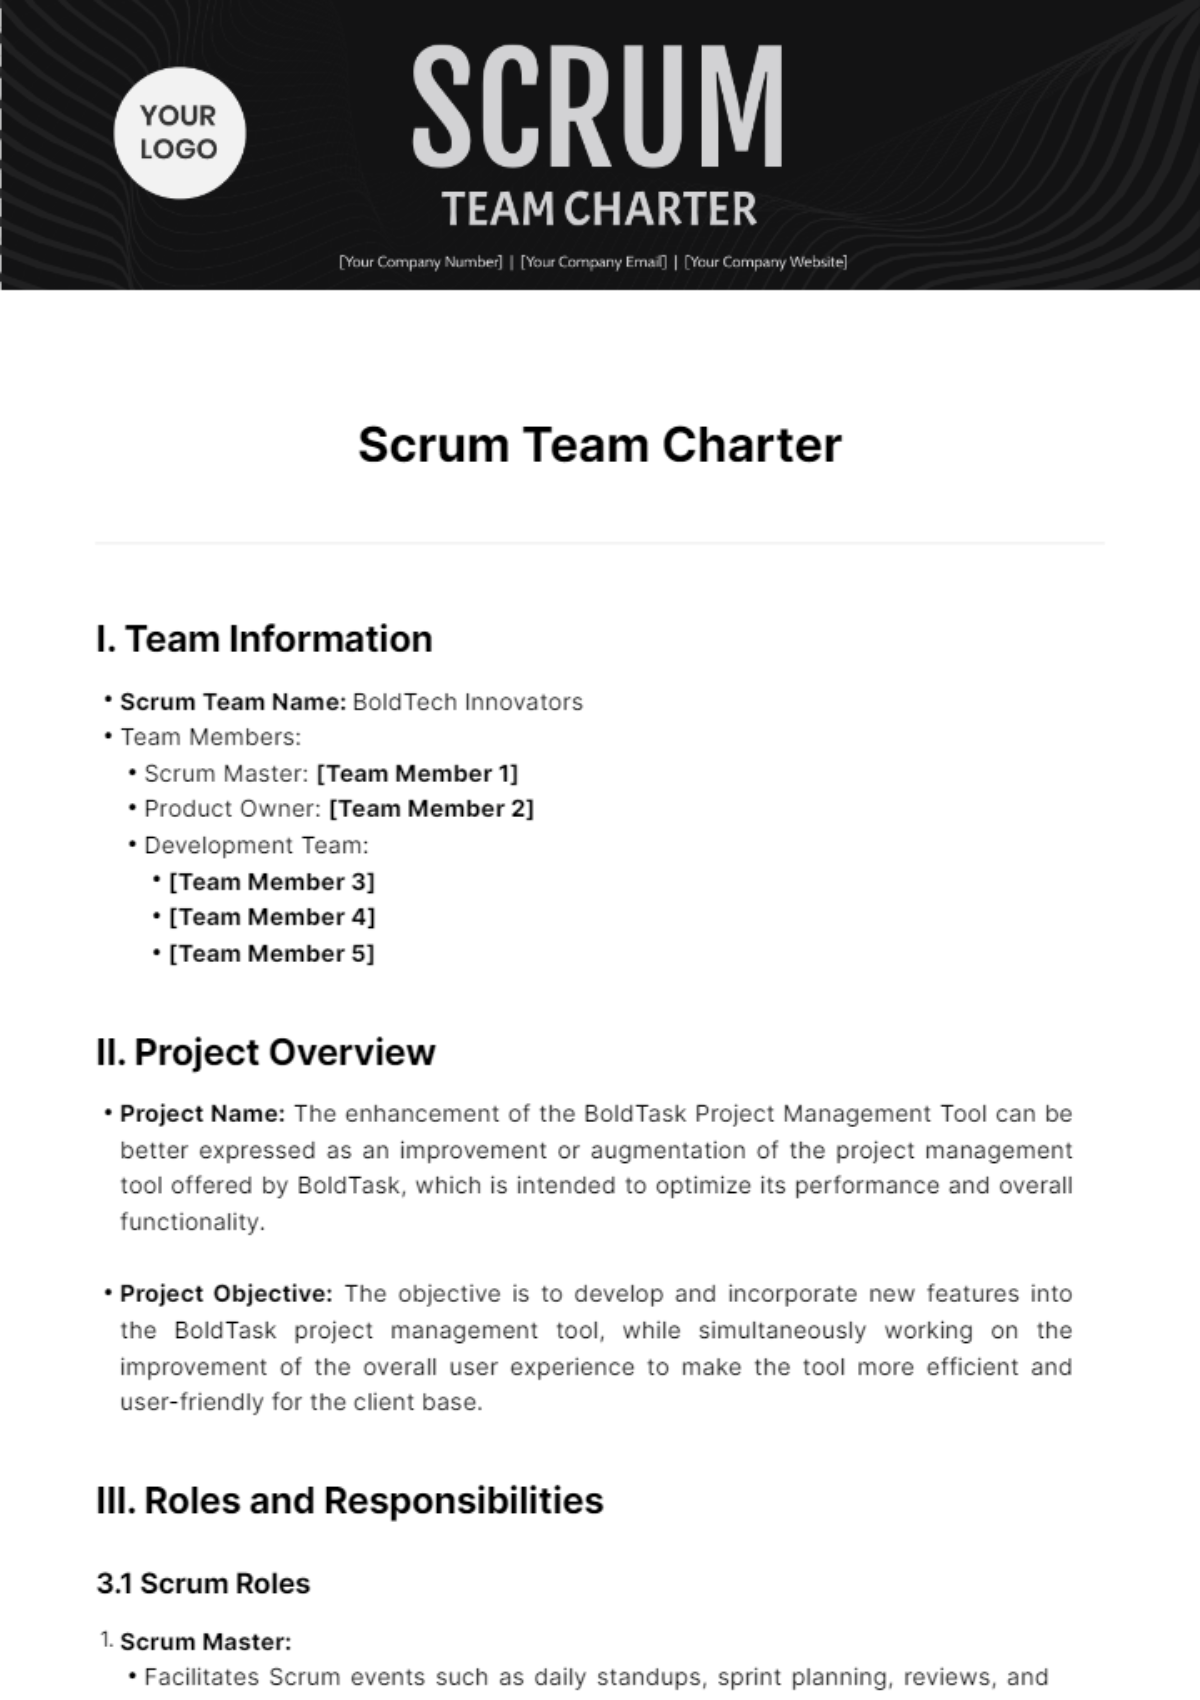 Scrum Team Charter Template